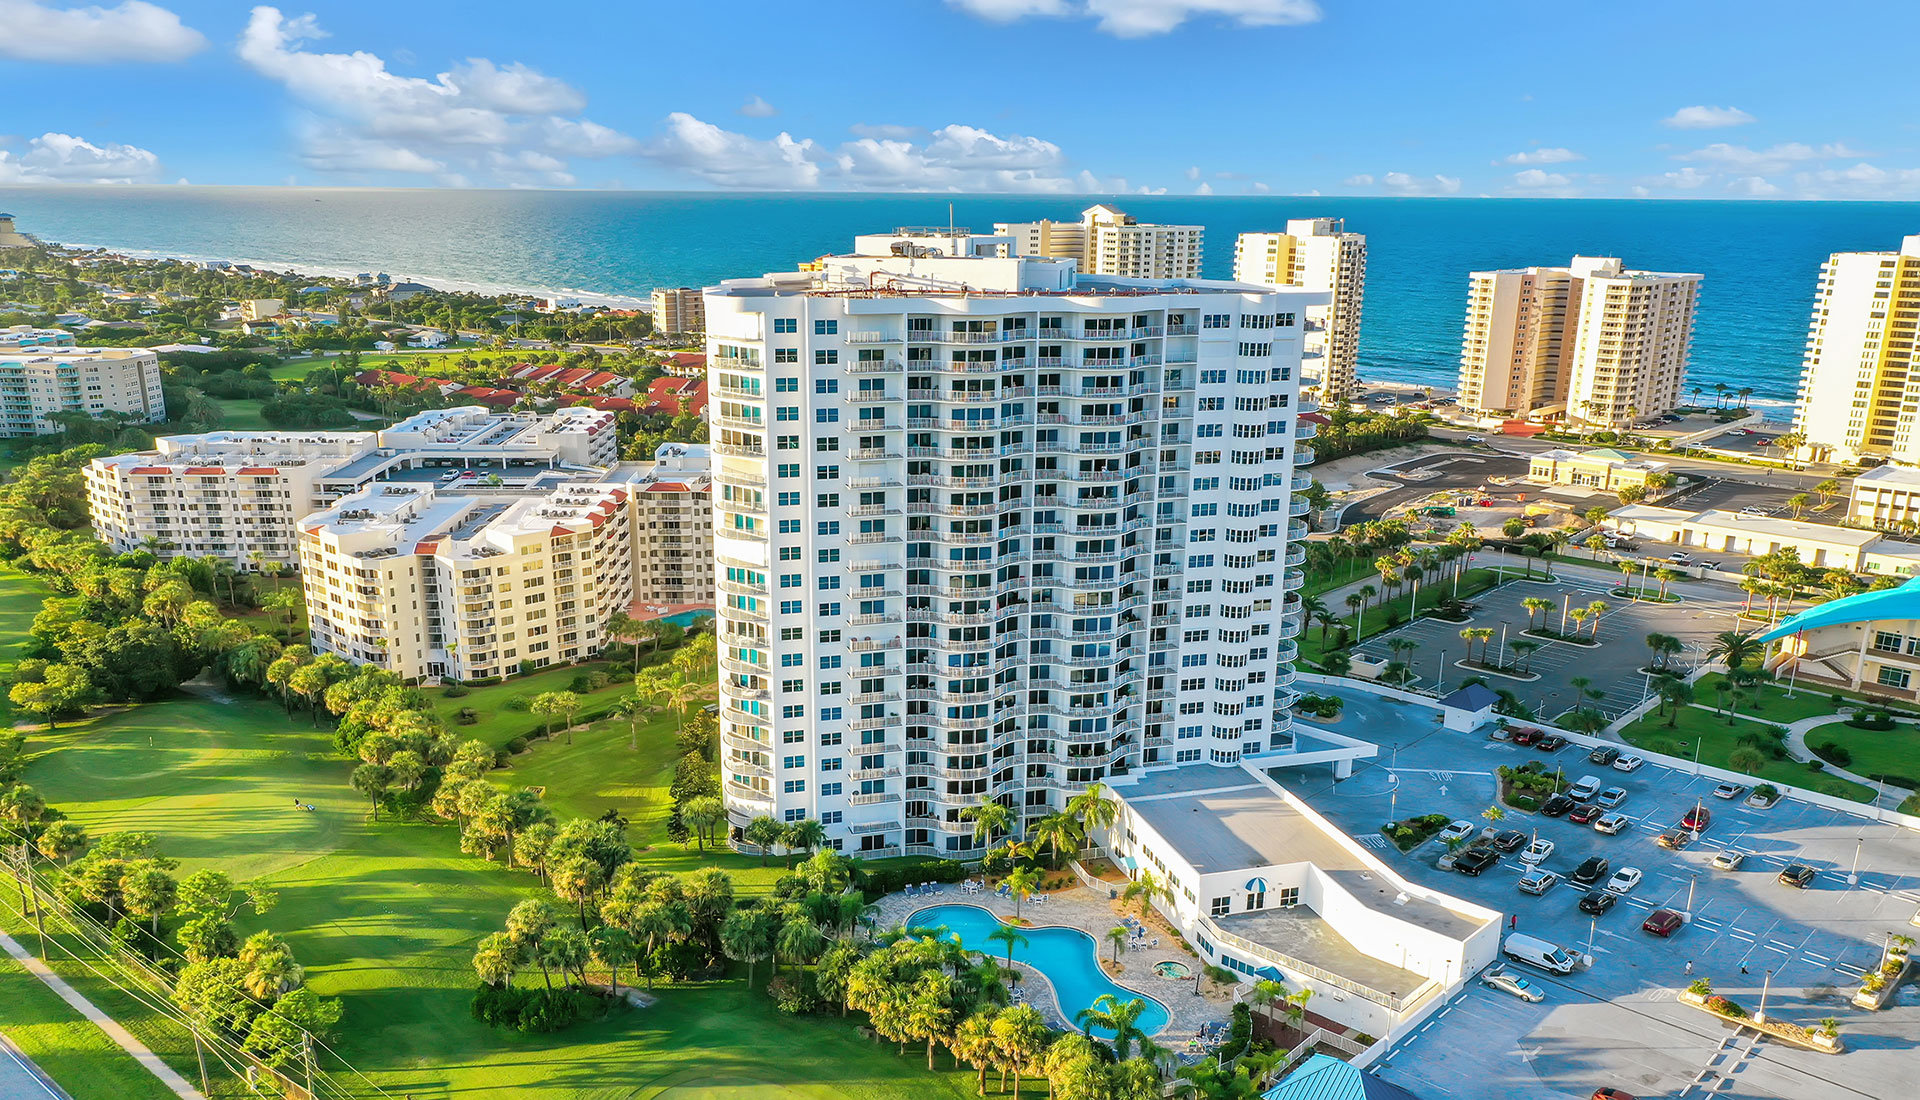 Oceans Grand Condos For Sale | Daytona Beach Shores | The LUXE Group 386-299-4043